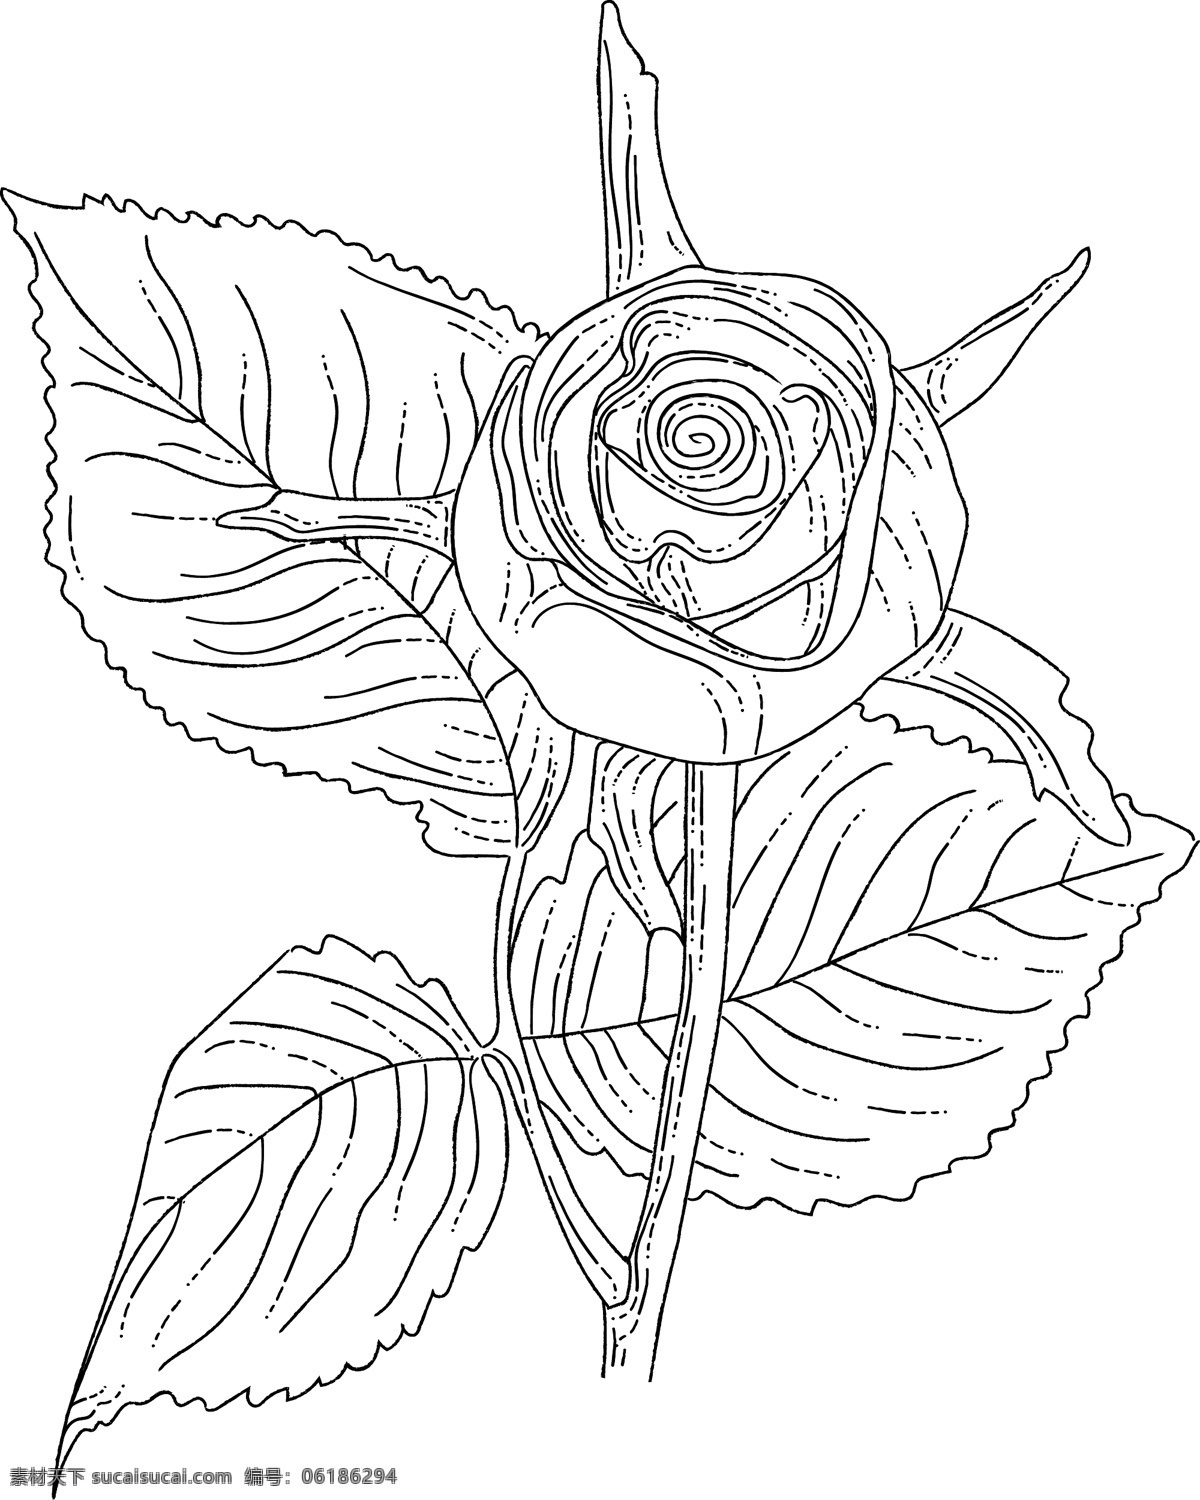 线 稿 图 绘画 植物 花朵 简笔线条 线条绘画 植物花朵 树枝 绘画线条 线稿图 巴洛克风格 文化艺术 绘画书法